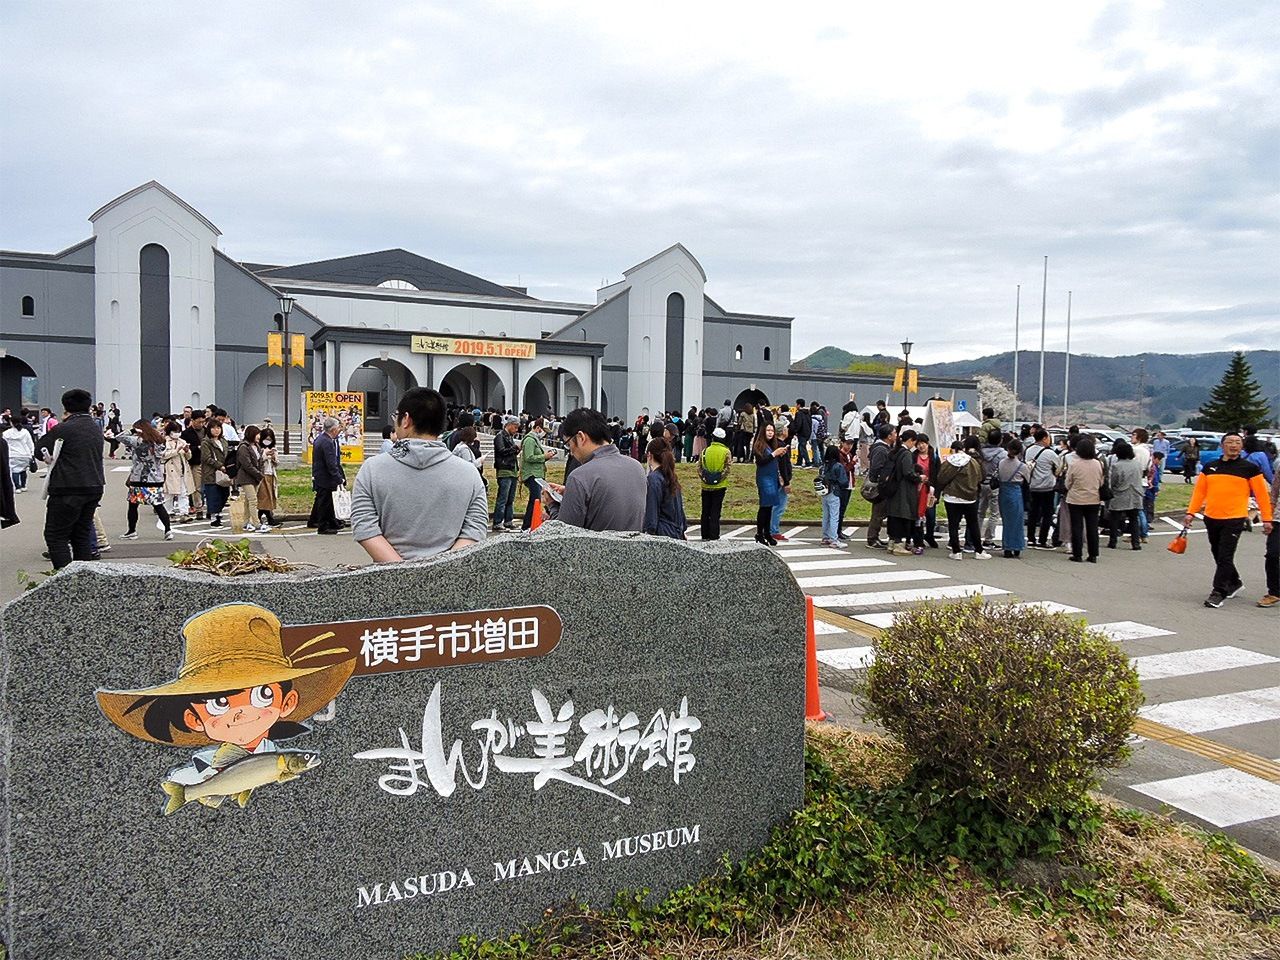 Une foule attend de pouvoir entrer dans le musée du manga de Yokote Masuda le jour de son ouverture en mai 2019.